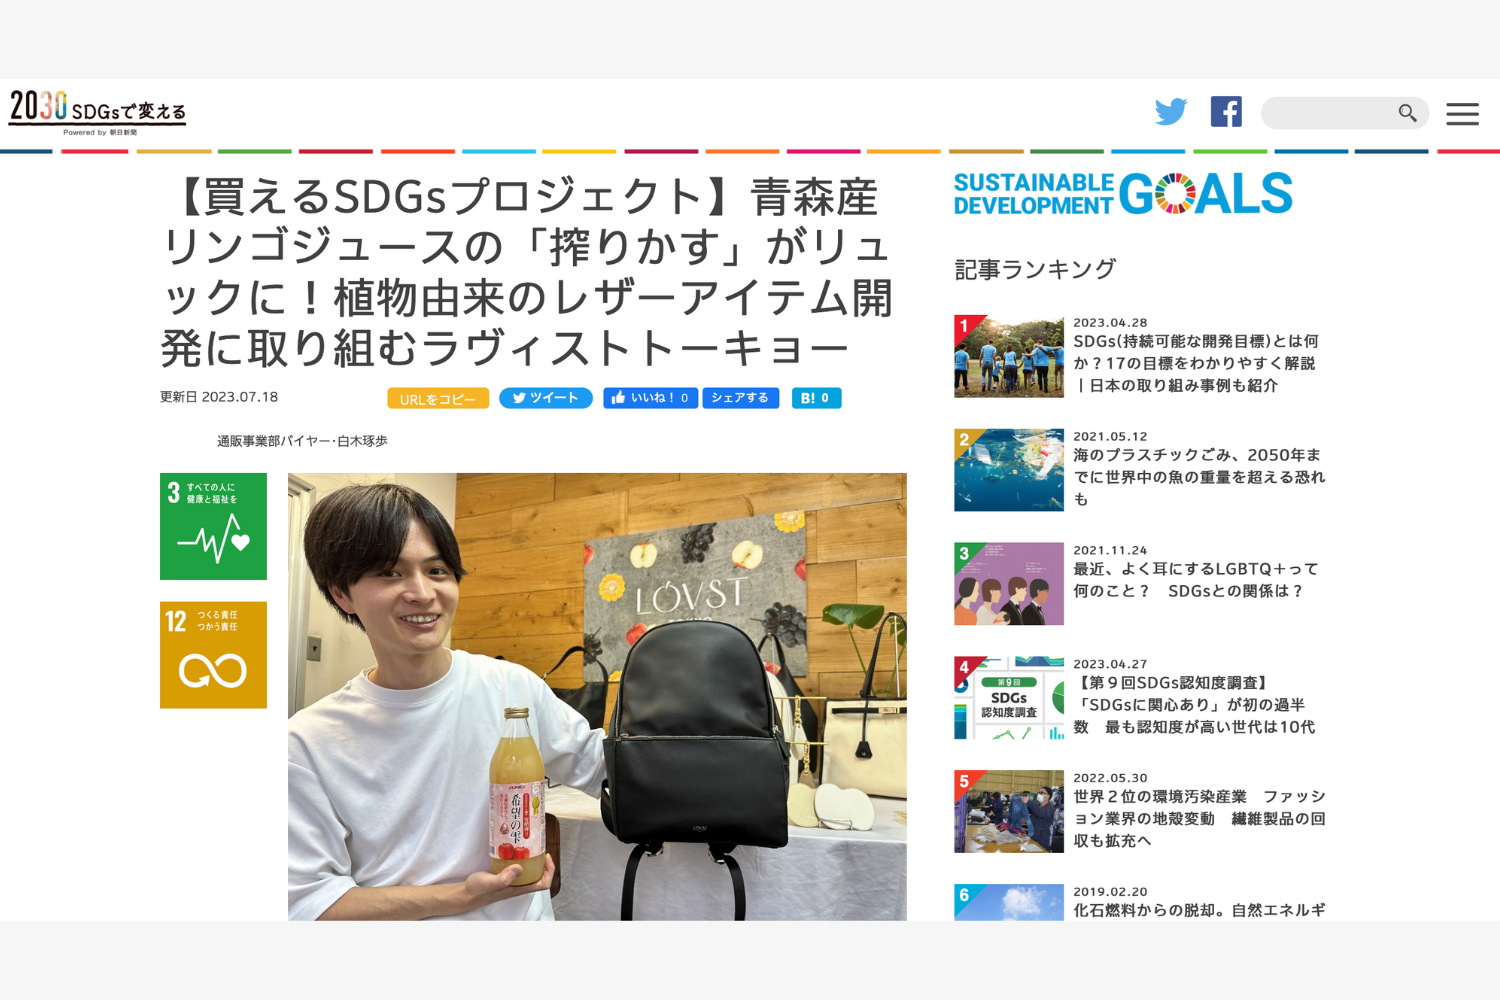 朝日新聞webメディア｢2030SDGsで変える」に掲載していただきました。